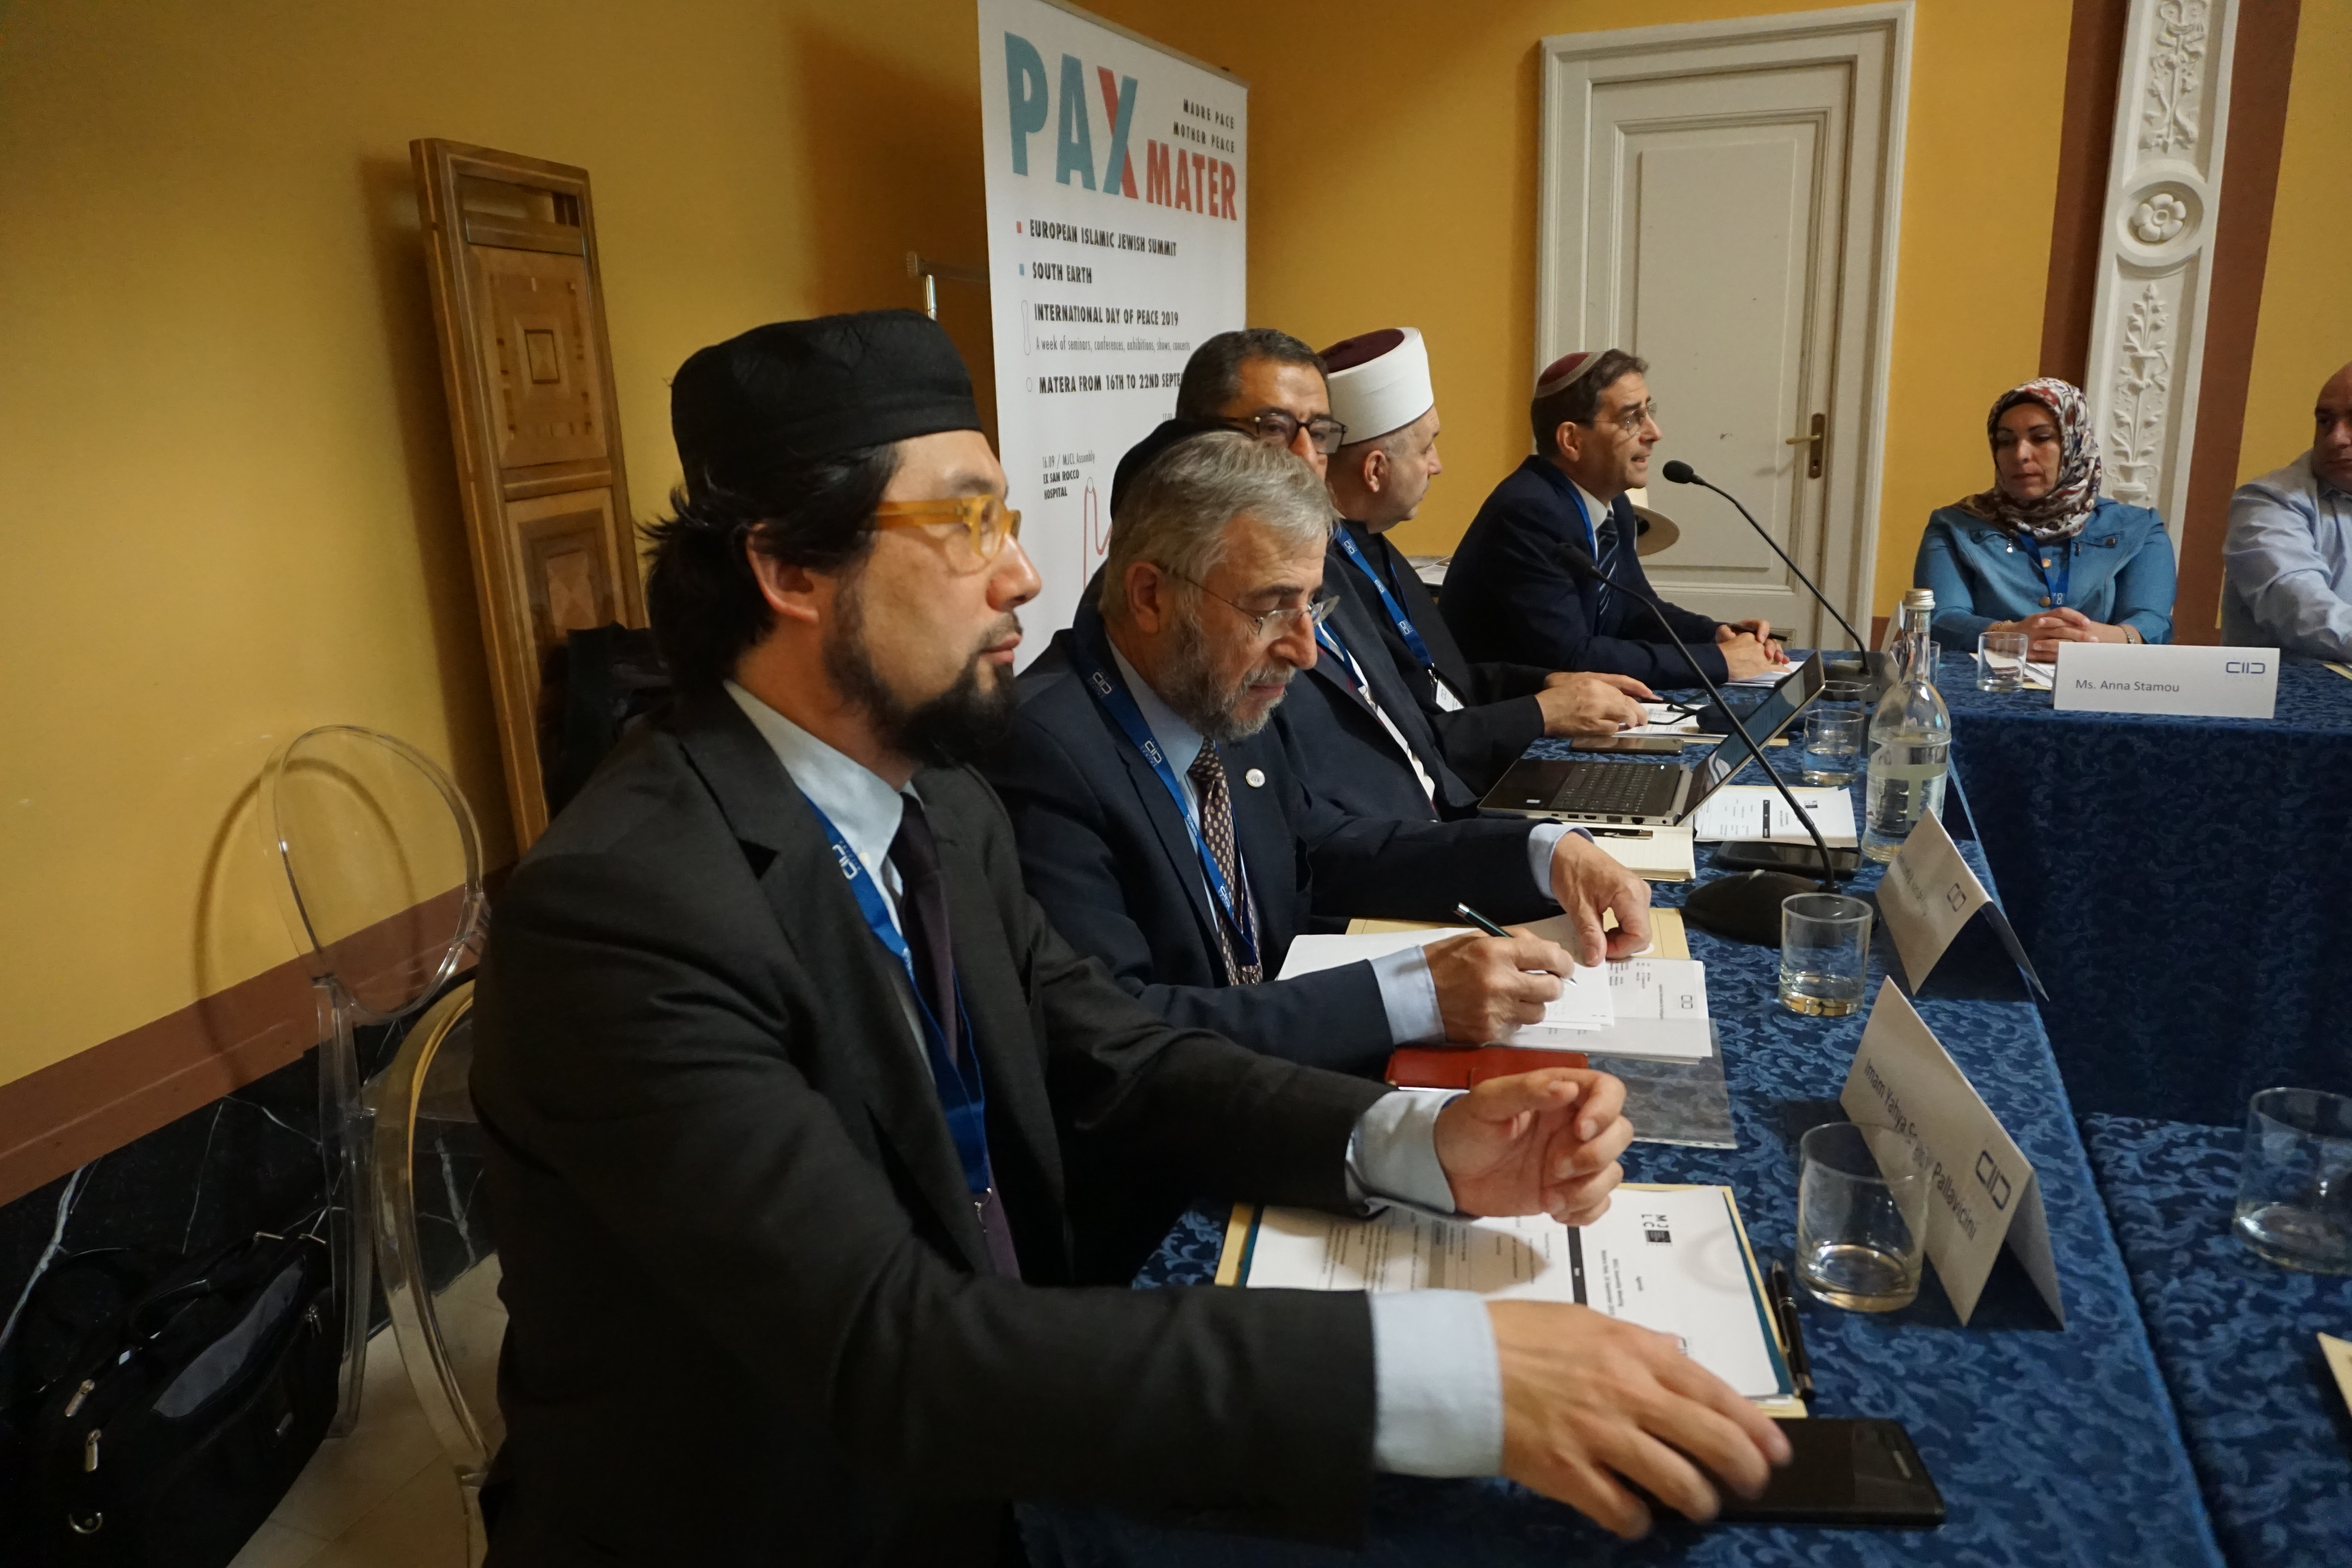 Los miembros del Consejo de Liderazgo Musulmán-Judío (MJLC por sus siglas en inglés), apoyado por el KAICIID, se reúnen en Matera, Italia